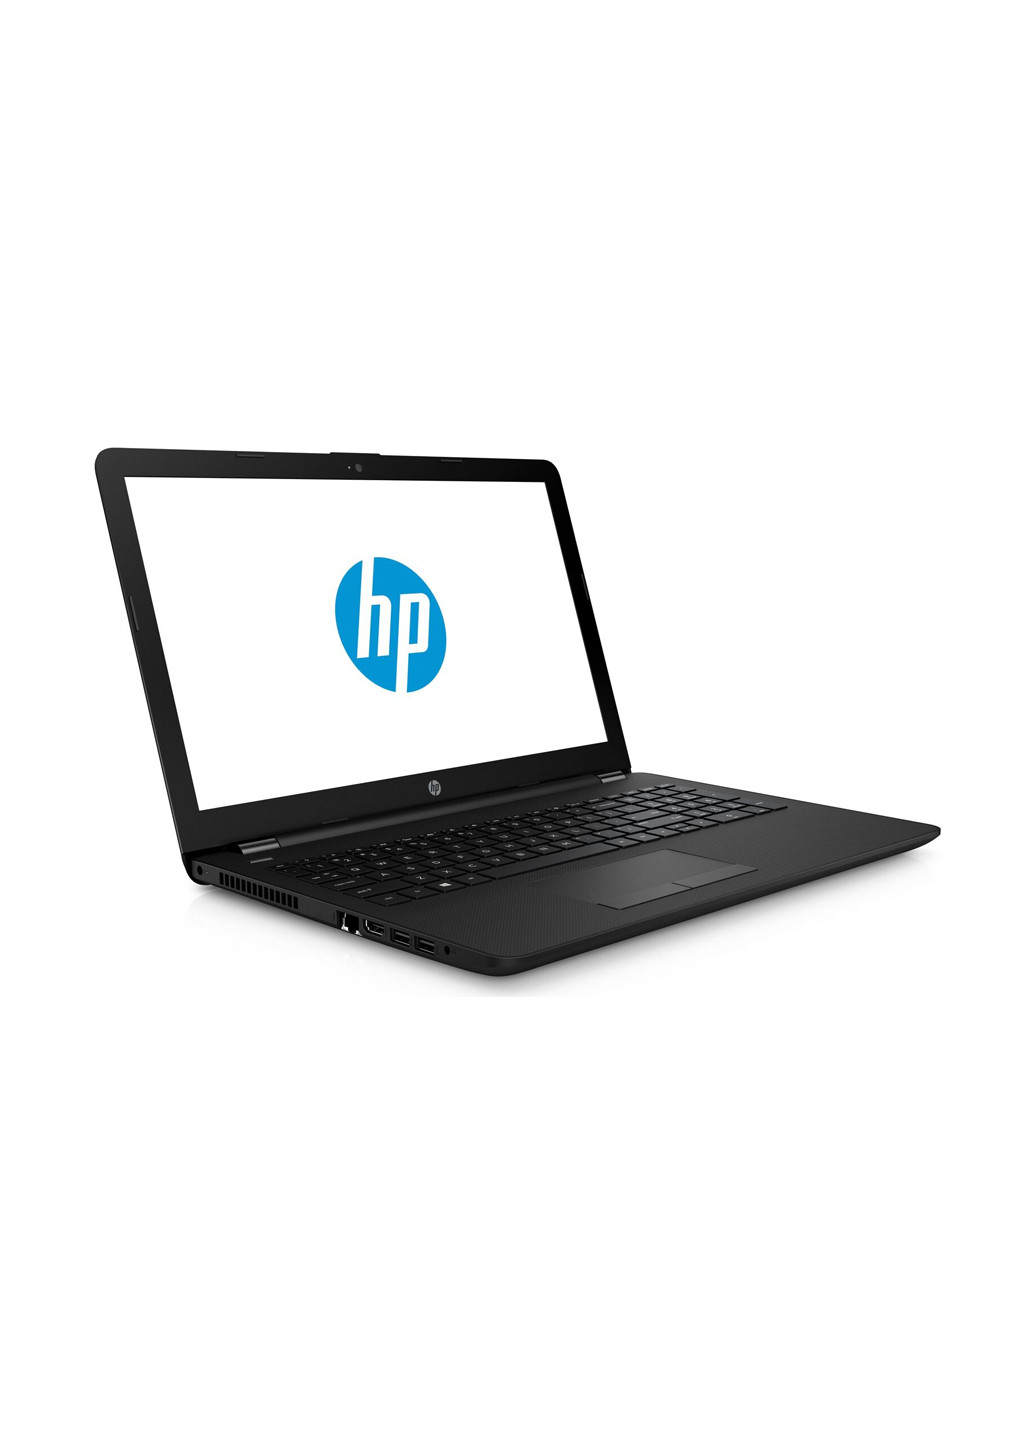 Ноутбук HP 15-bs182ur (4UM08EA) Black чорний